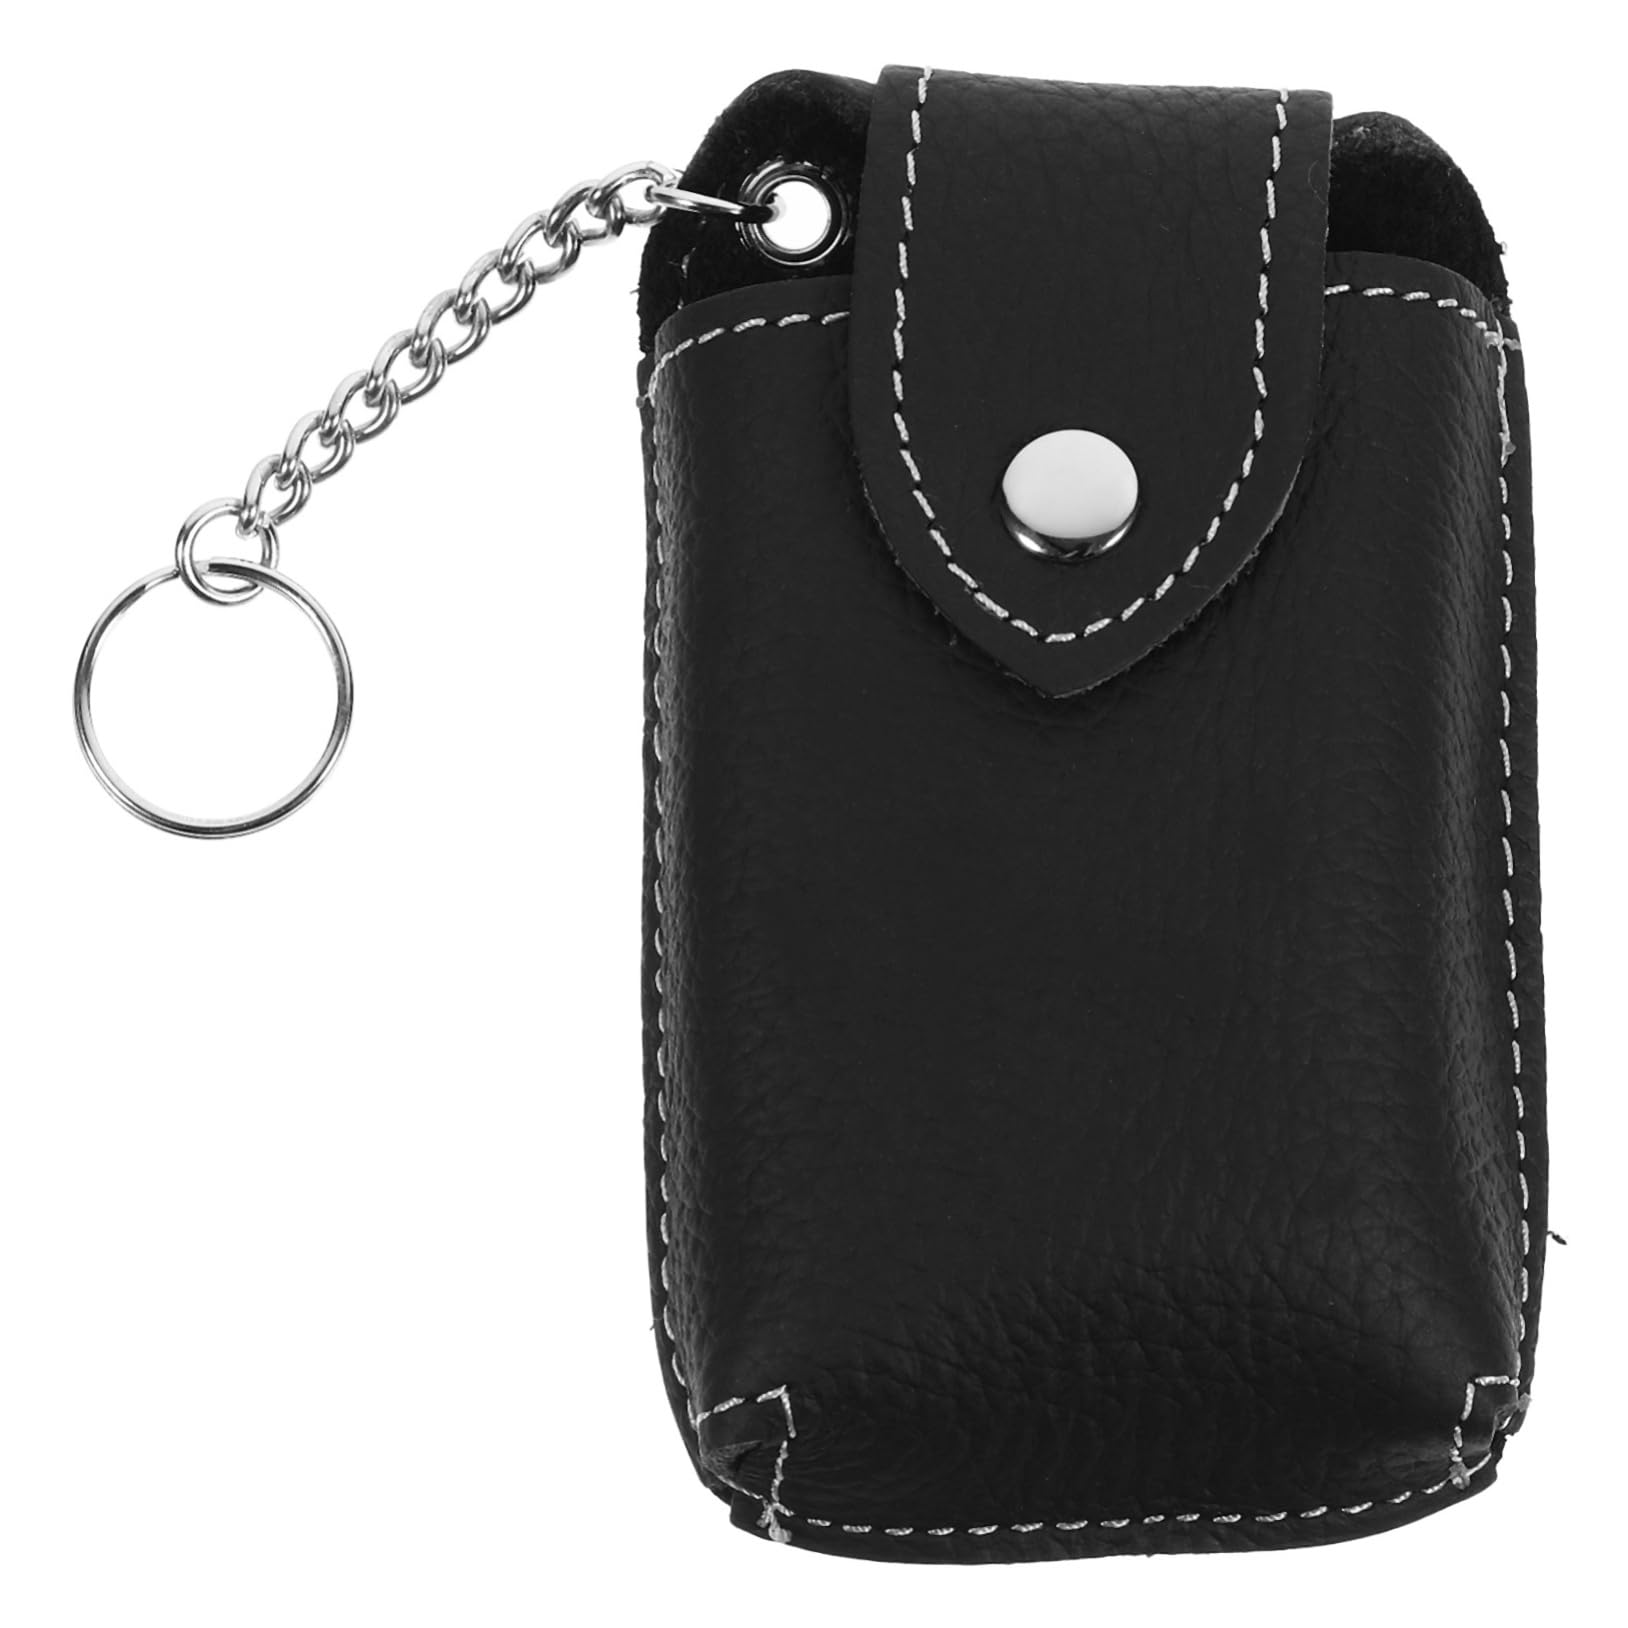 Holibanna 2St Tasche für Autoschlüssel Schlüsseltasche Schlüsselanhänger-Etui Schutz für Schlüsselanhänger Schlüsselabdeckung für Autoschlüssel Wagen Schlüsselbox Gürtel Echtes Leder von Holibanna